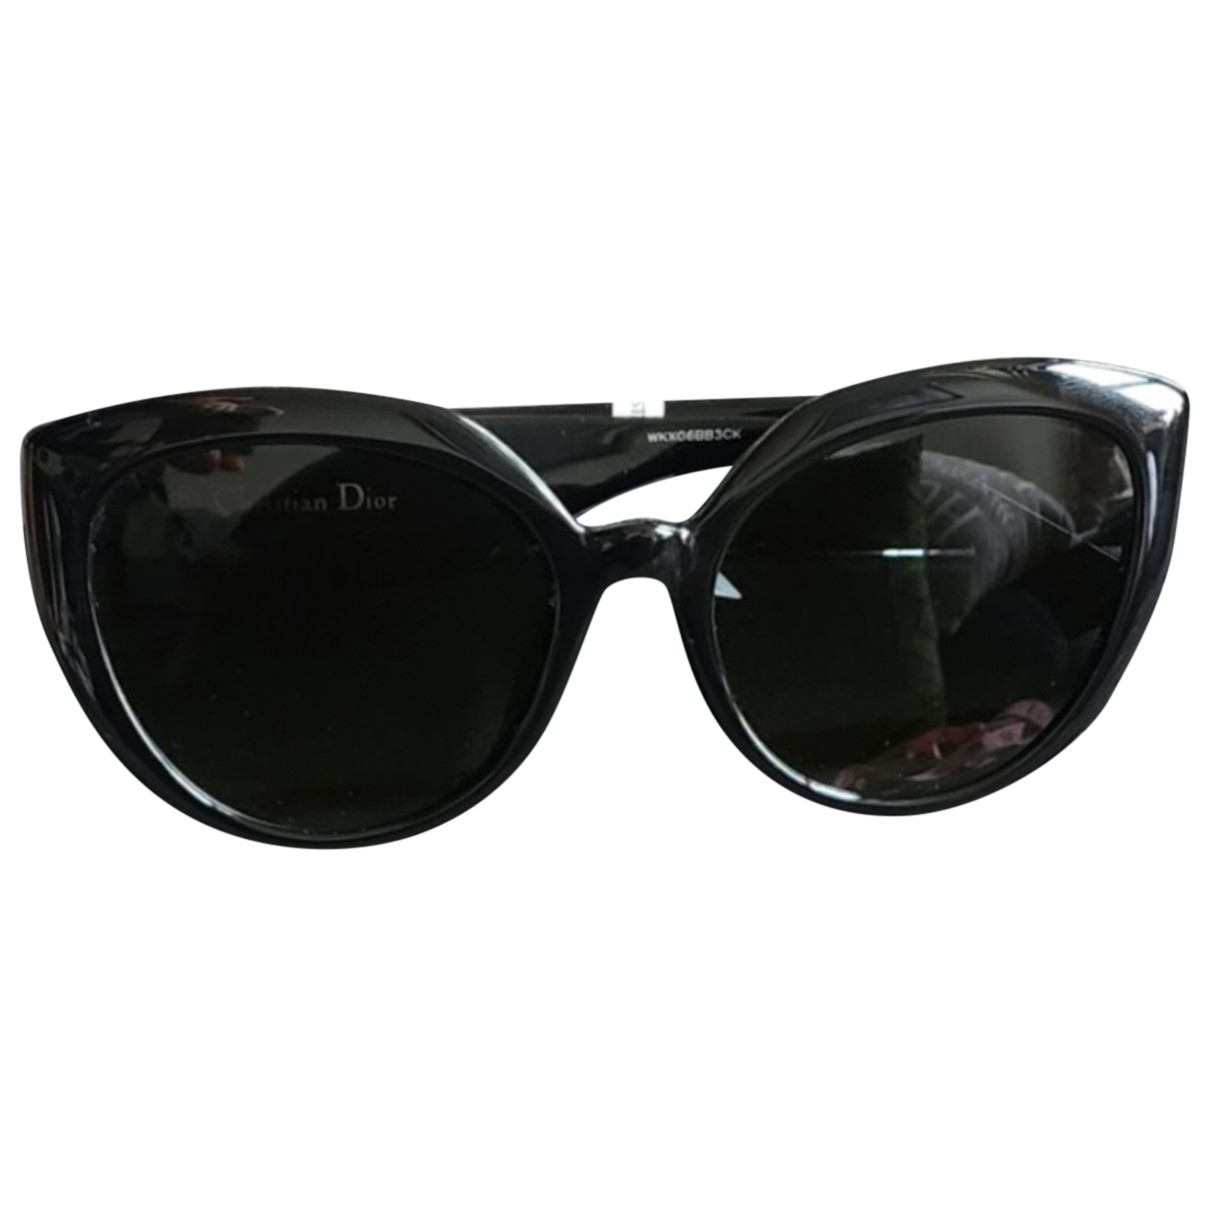 Dior CatstyleDior1 sunglasses